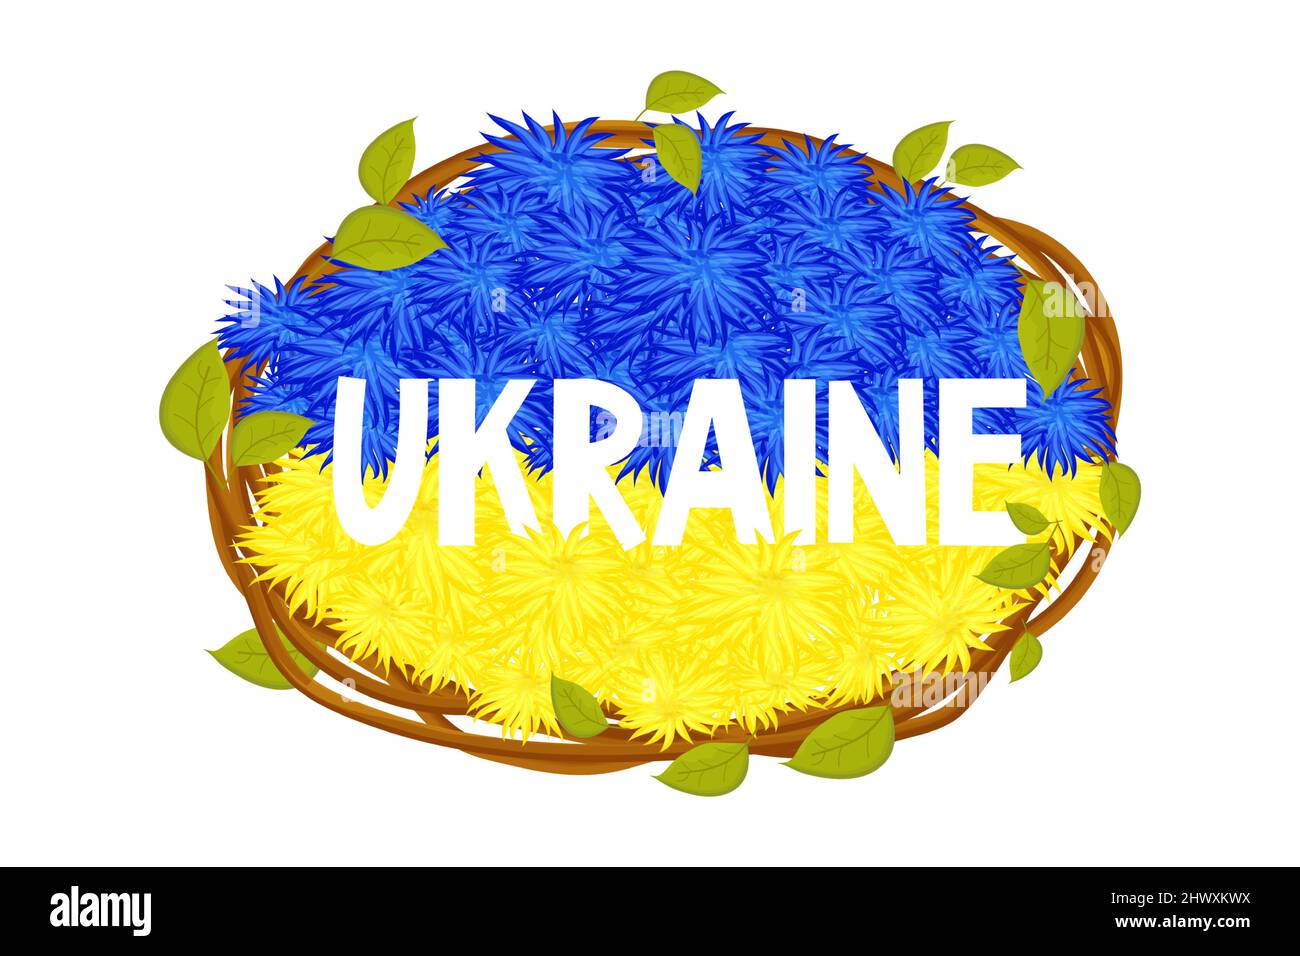 Ukrainische Flagge, Nationalflagge aus Blumen Text Ukraine mit zwei Farben blau und gelb, Rahmen aus Stäben mit Blättern im Cartoon-Stil. Elemente für das Design. . Vektorgrafik Stock Vektor